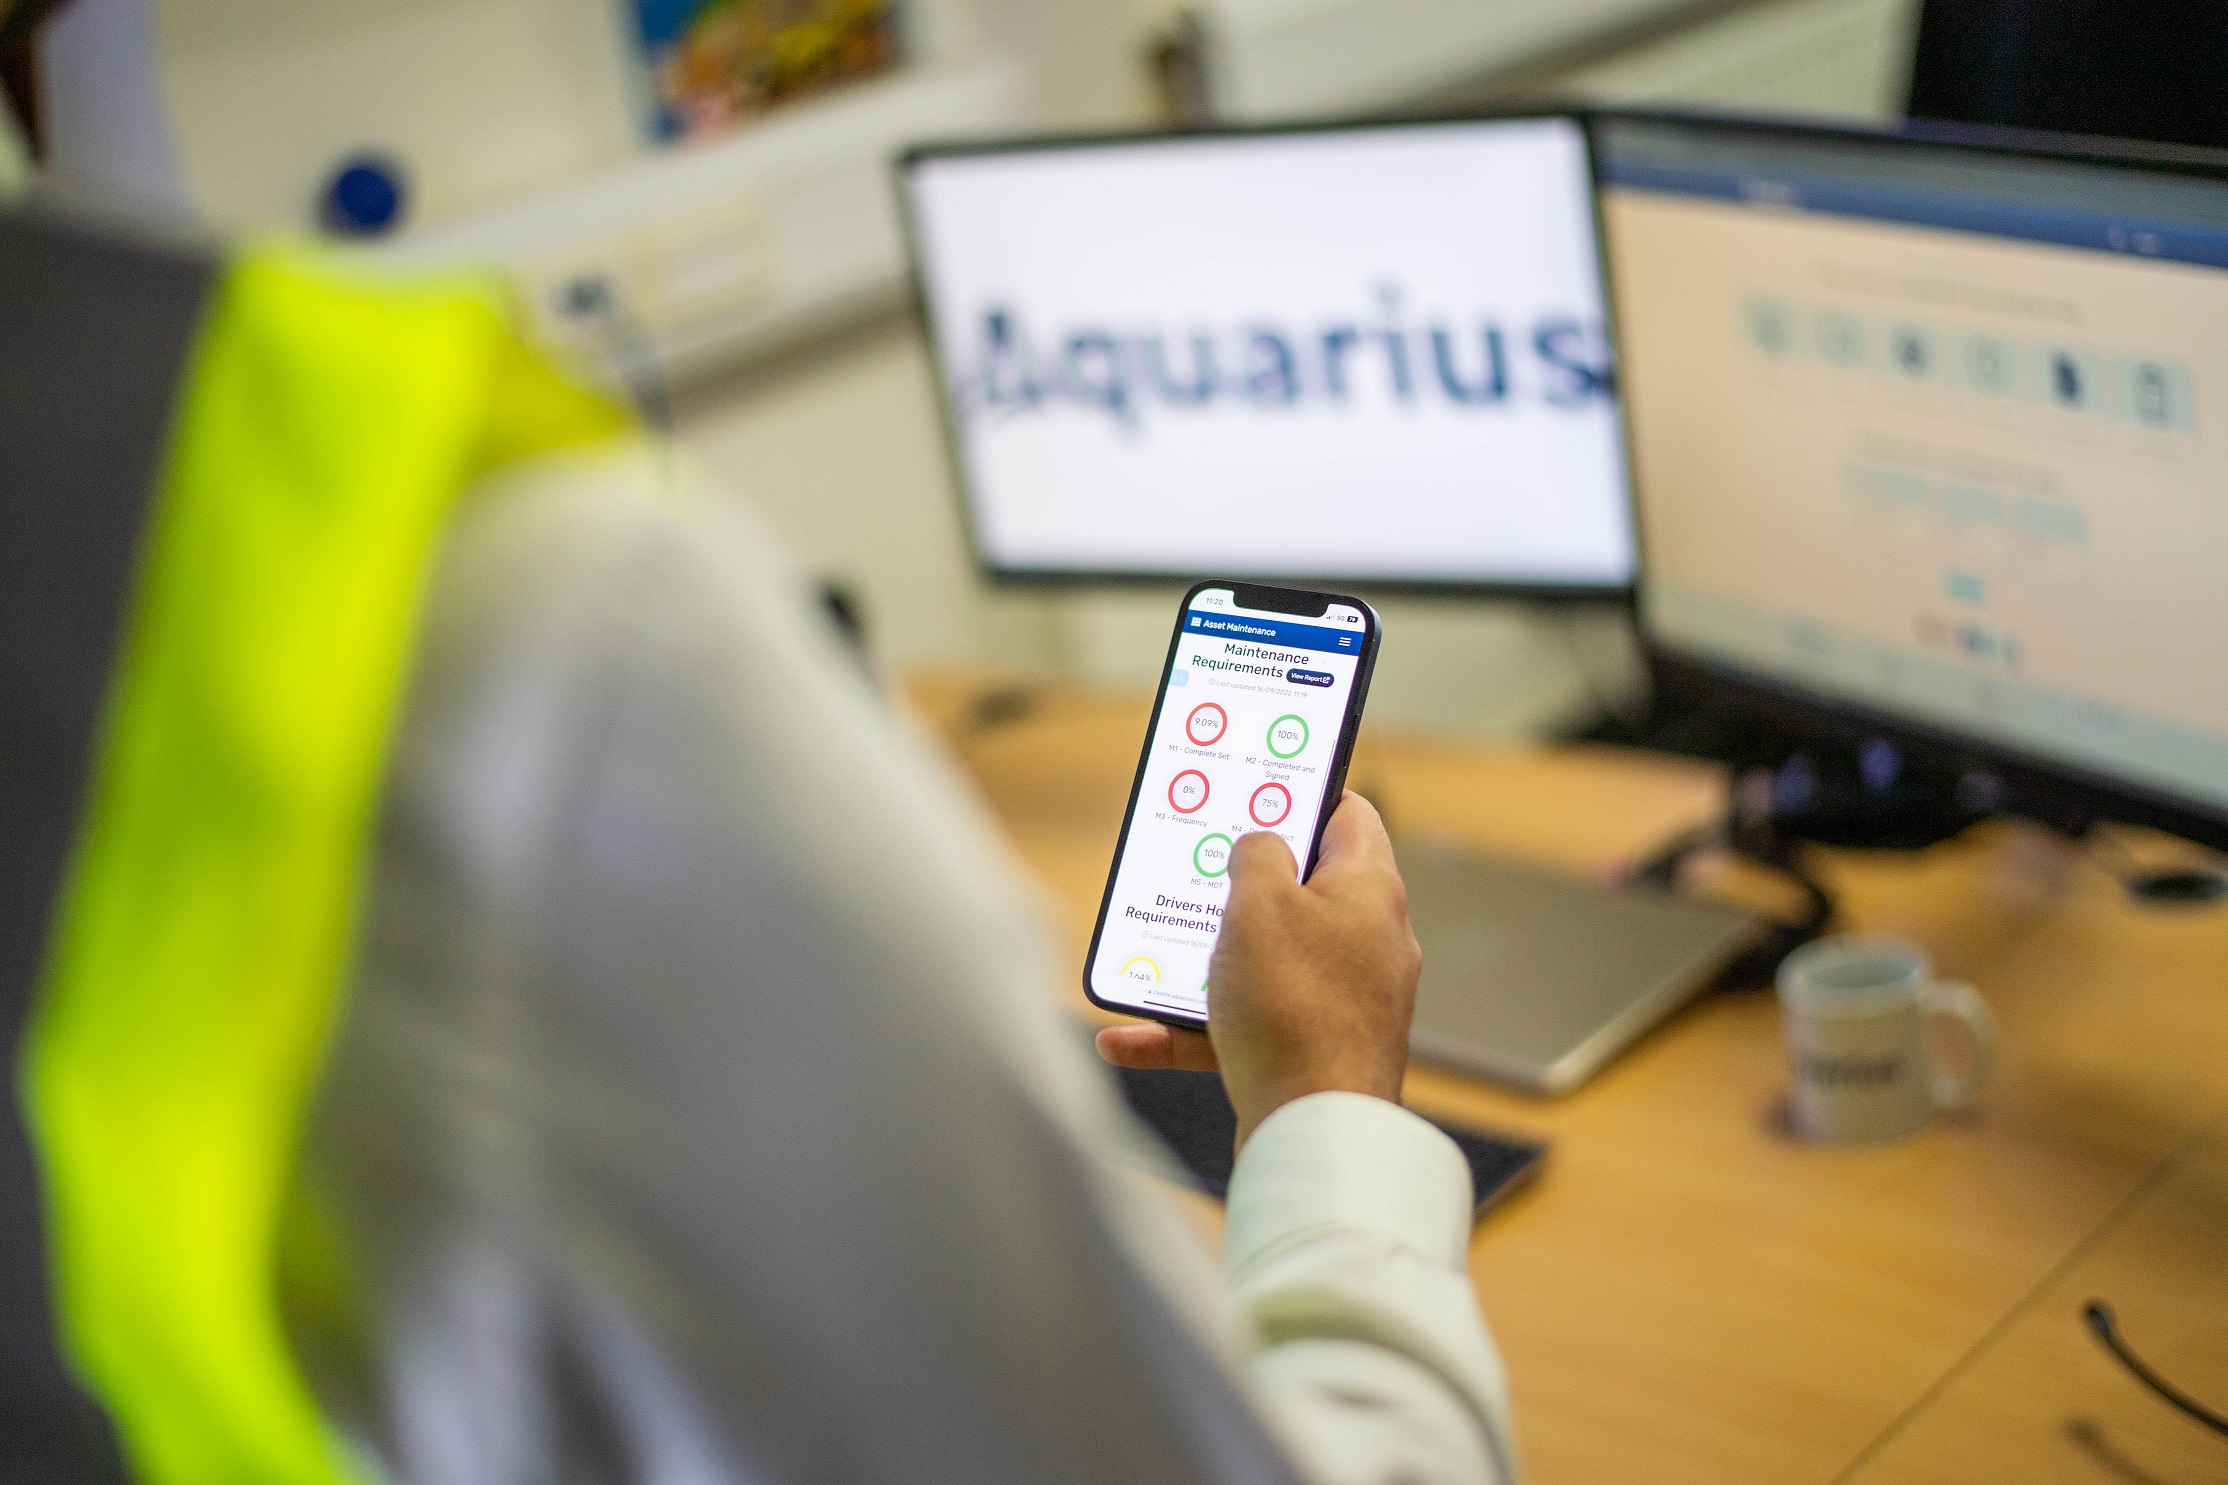 Aquarius IT launches rebrand